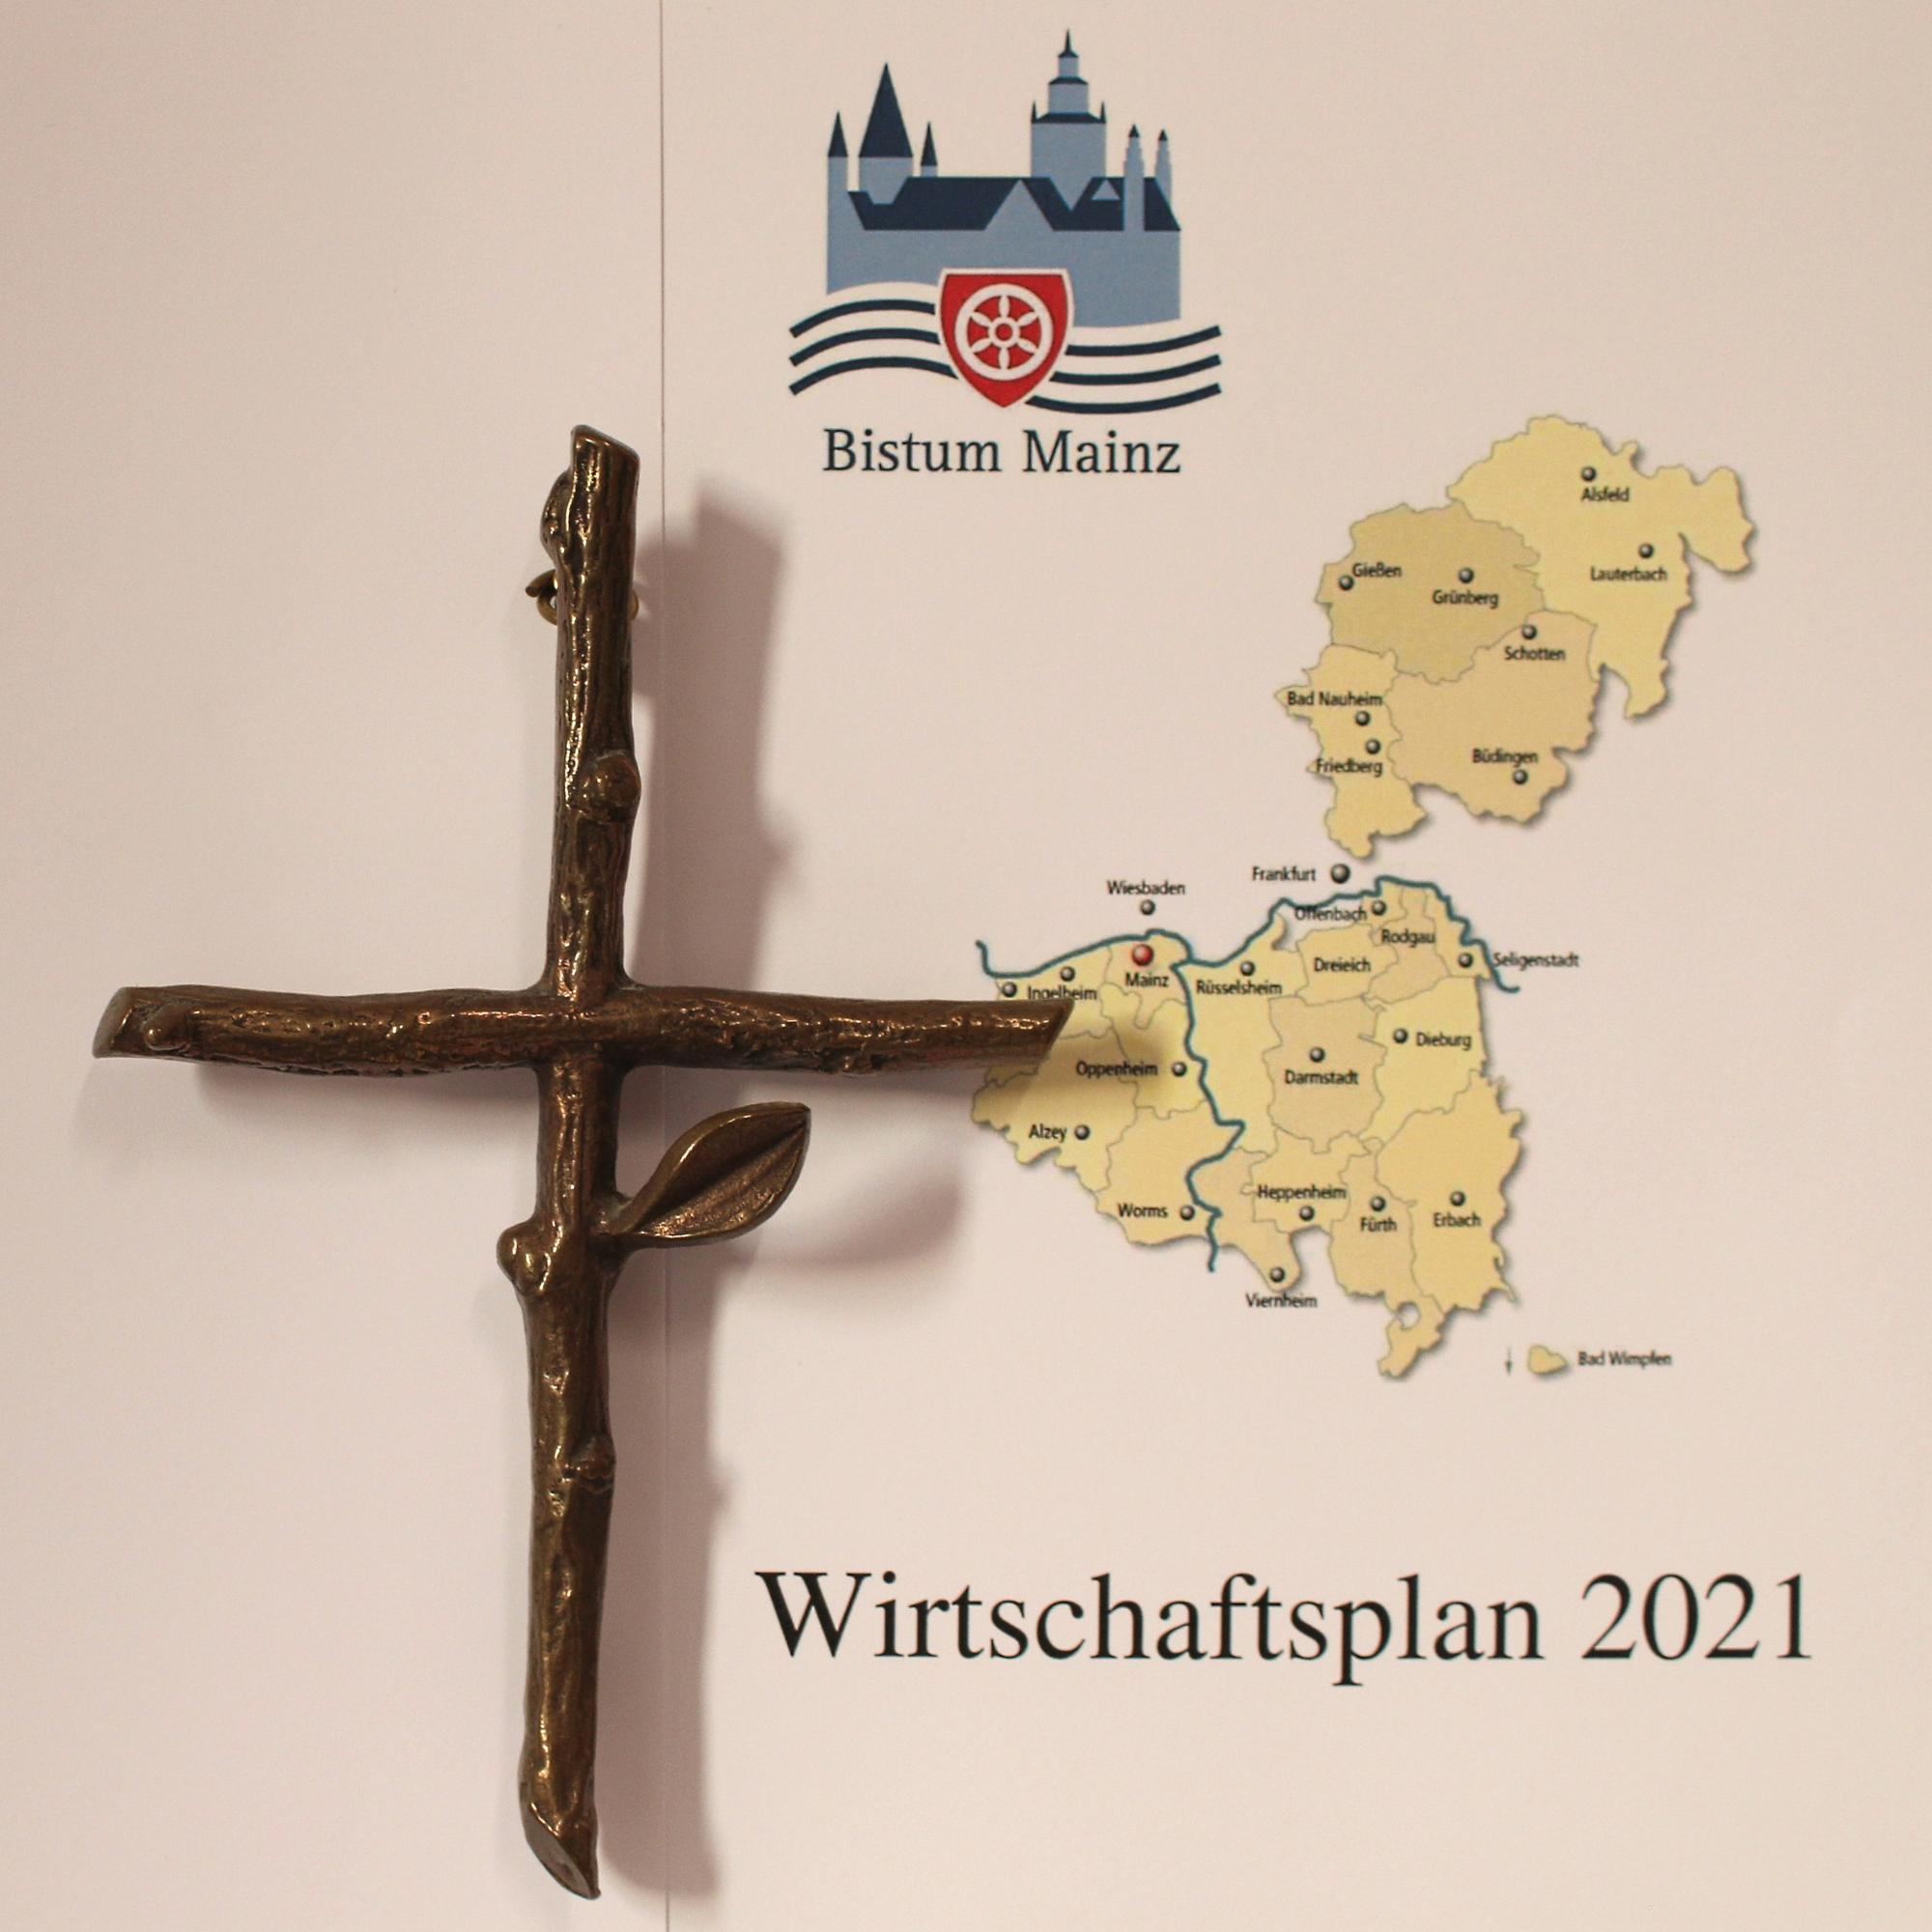 Wirtschafts- und Investitionsplan des Bistums Mainz für 2021